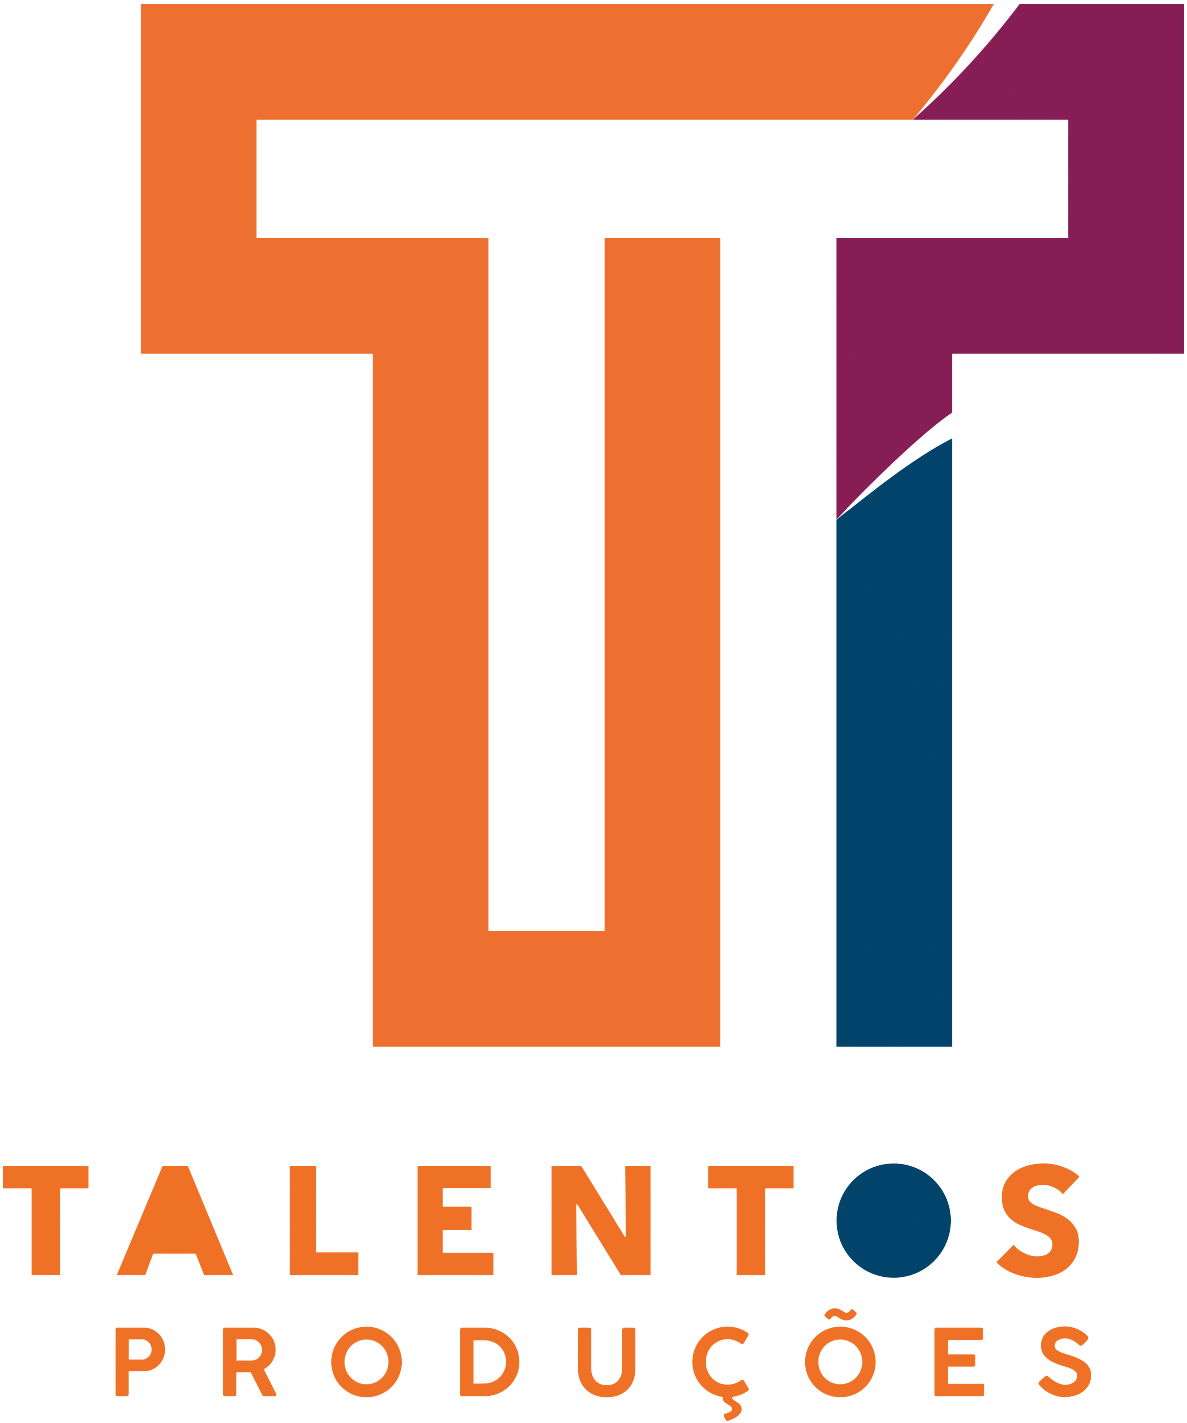 (c) Talentosproducoes.com